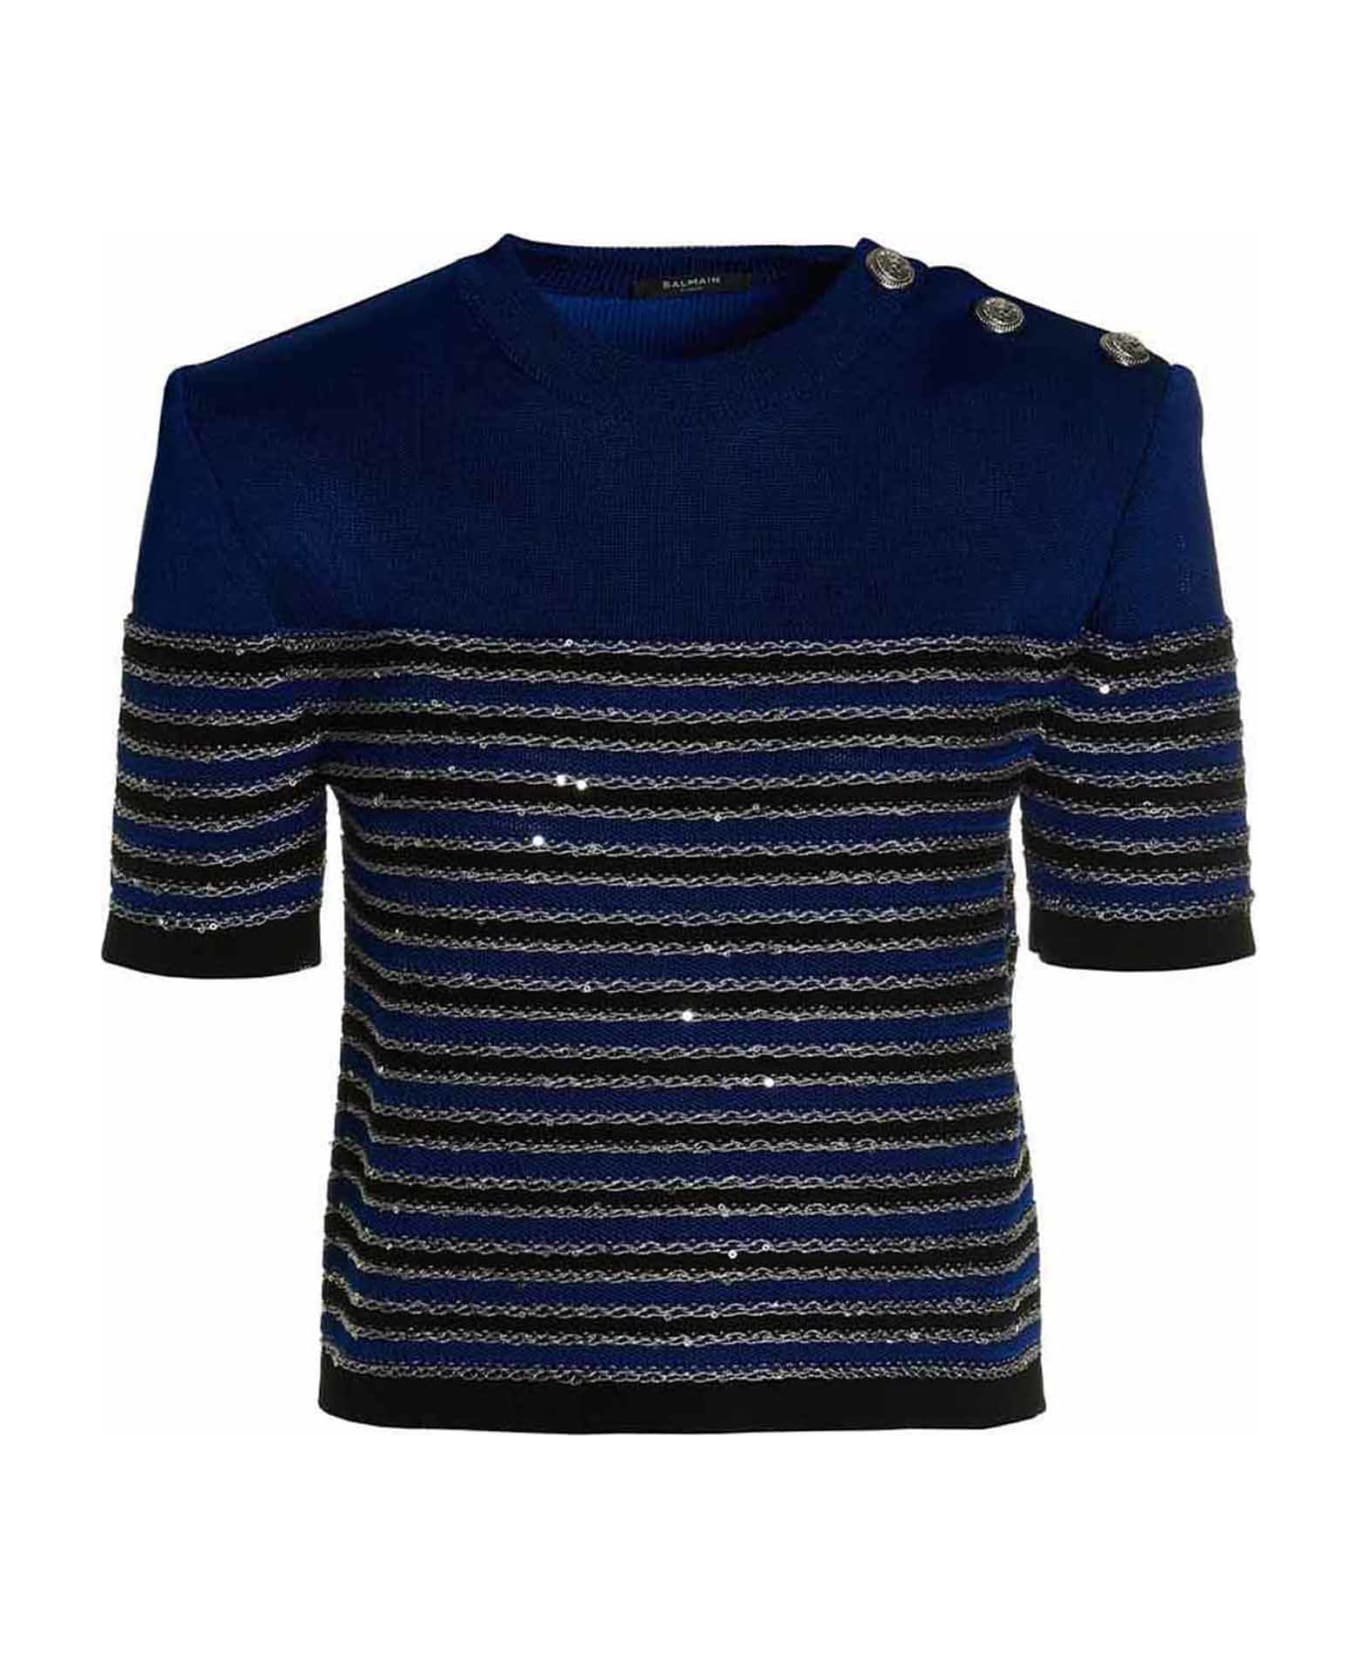 Balmain Striped Knit Top - Blue